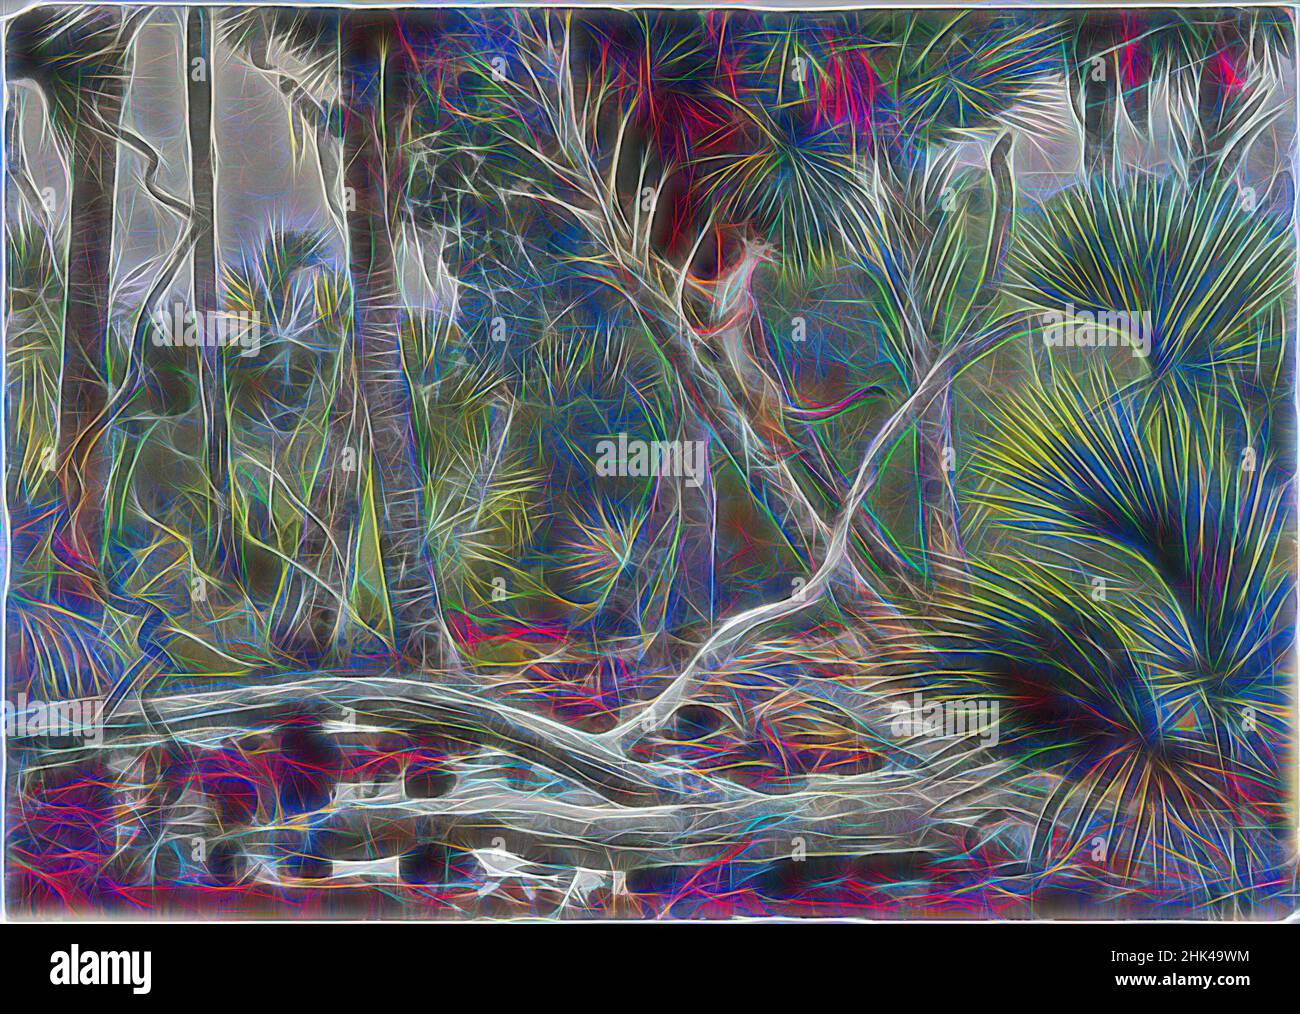 Ispirato da in the Jungle, Florida, Winslow Homer, americano, 1836-1910, Acquerello trasparente con tocchi di acquerello opaco su grafite su carta di colore bianco sporco, moderatamente spessa, moderatamente testurizzata, Stati Uniti, 1904, 13 7/8 x 19 11/16 in., 35,2 x 50 cm, gatto, facciate, giungla, Paesaggio, Log, reimmaginato da Artotop. L'arte classica reinventata con un tocco moderno. Design di calda e allegra luminosità e di raggi di luce. La fotografia si ispira al surrealismo e al futurismo, abbracciando l'energia dinamica della tecnologia moderna, del movimento, della velocità e rivoluzionando la cultura Foto Stock